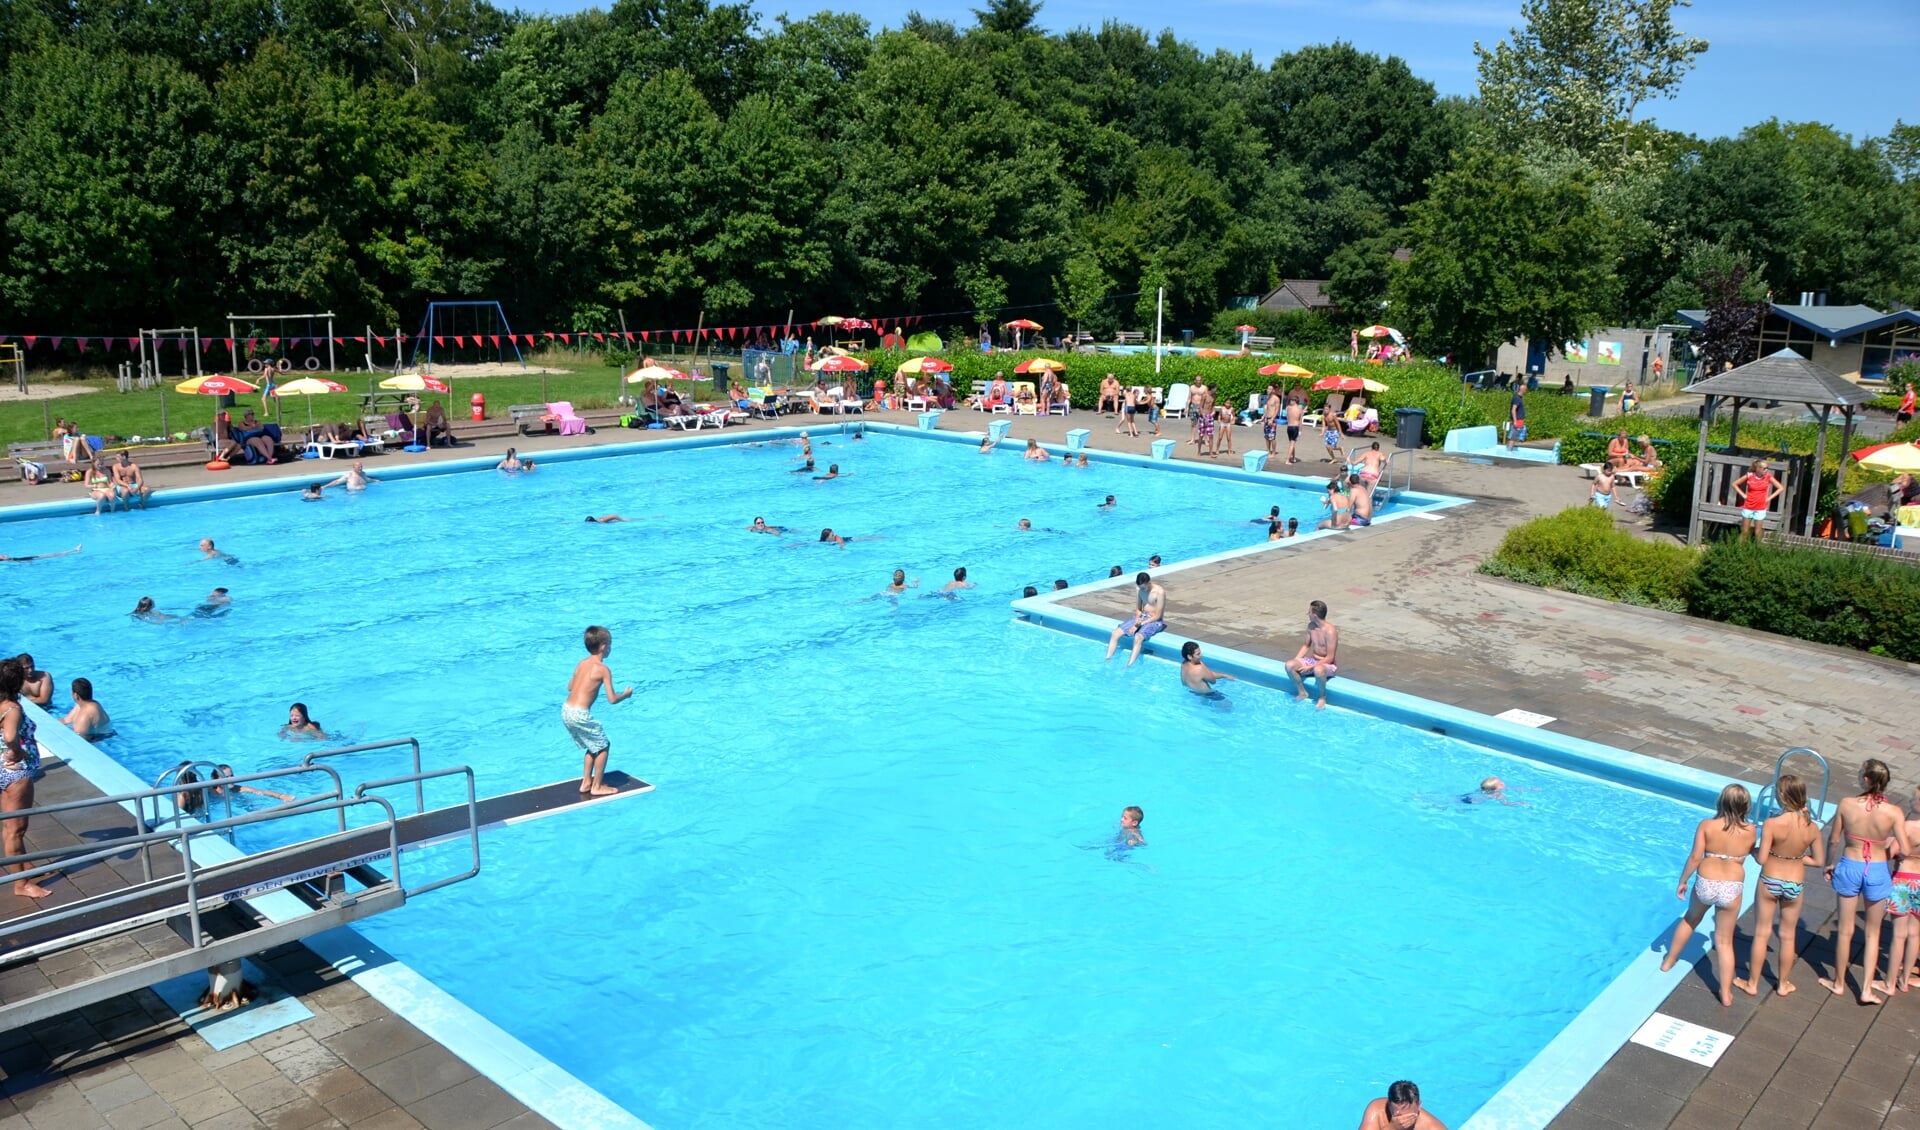 Zwembad De Boskoele zal in welke nieuwe vorm dan ook kleiner zijn dan nu. Foto: PR